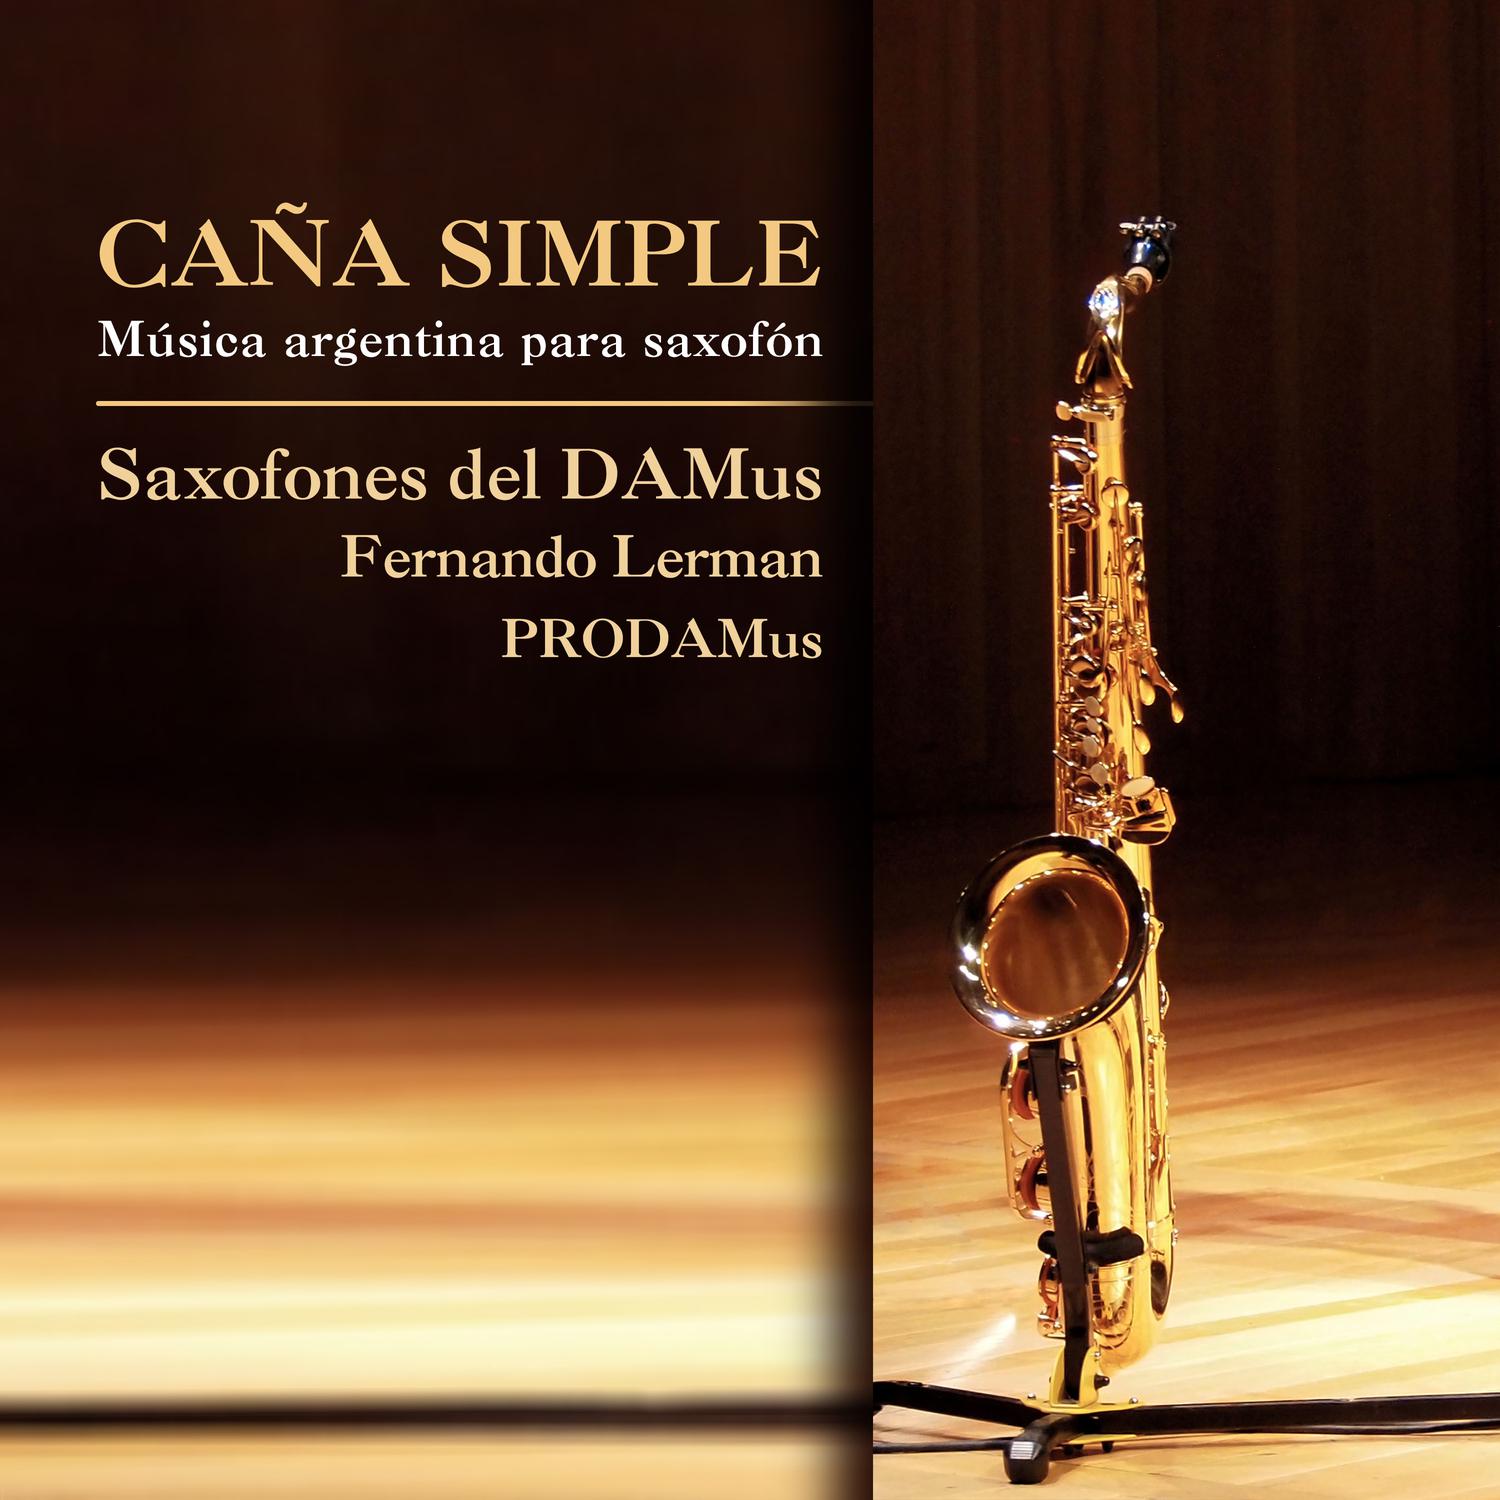 Saxofones del DAMus - Matias Piégari, Aires Argentinos: II. Aires de Tonada